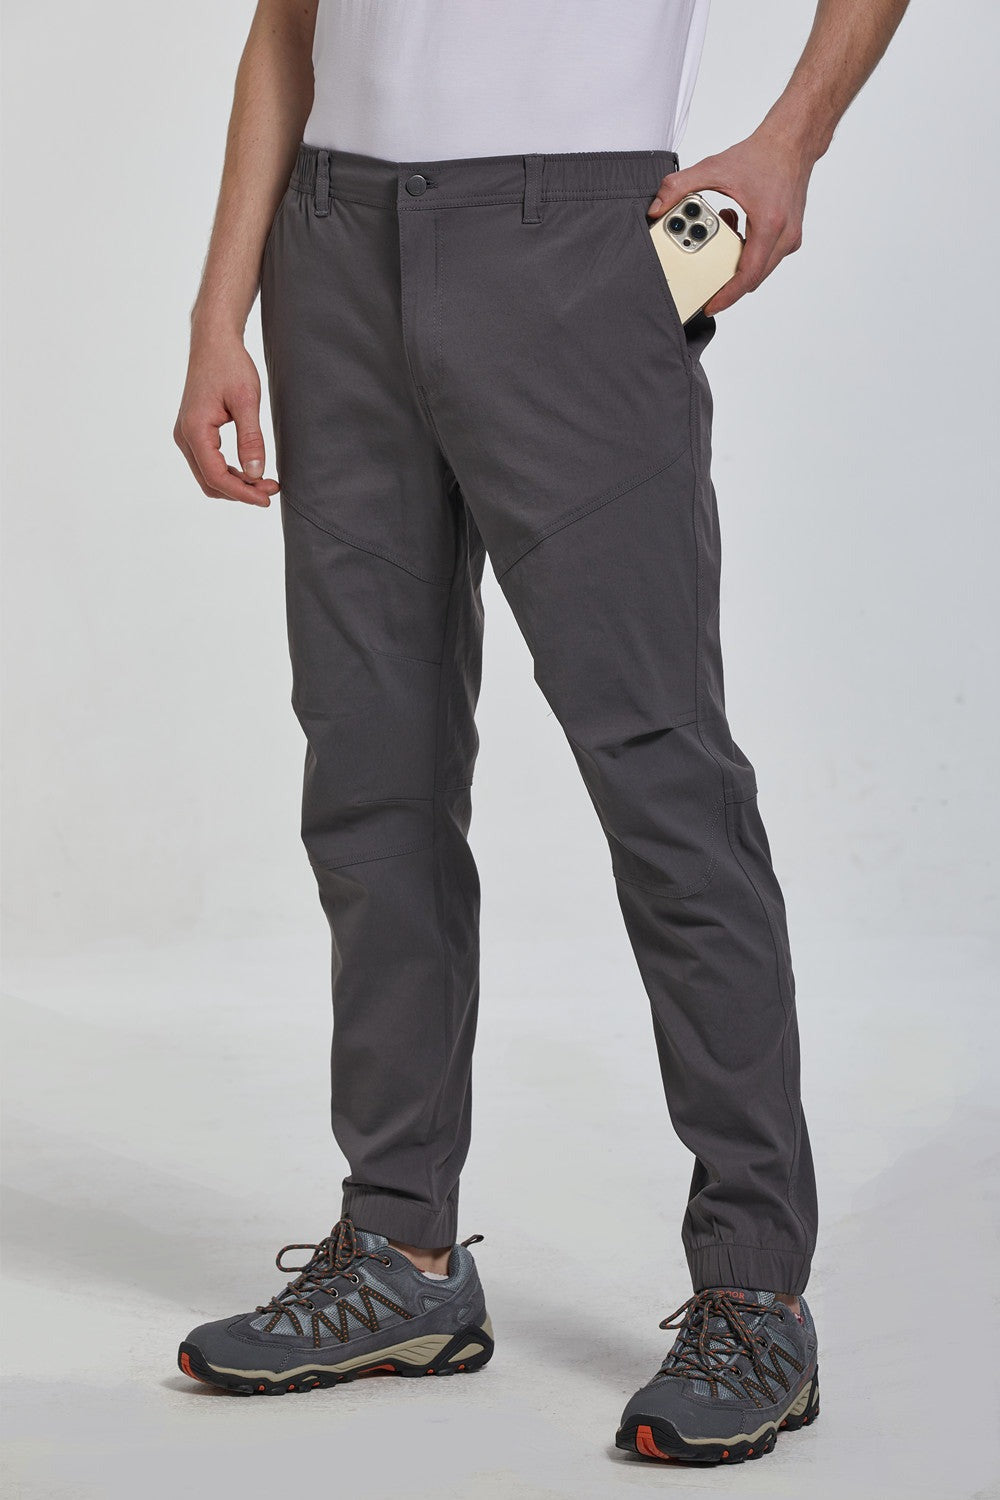 HELMUT LANG Track Pants With Belt Loop Rayon Gray Black Men 4 From Japan  Genuine | eBay